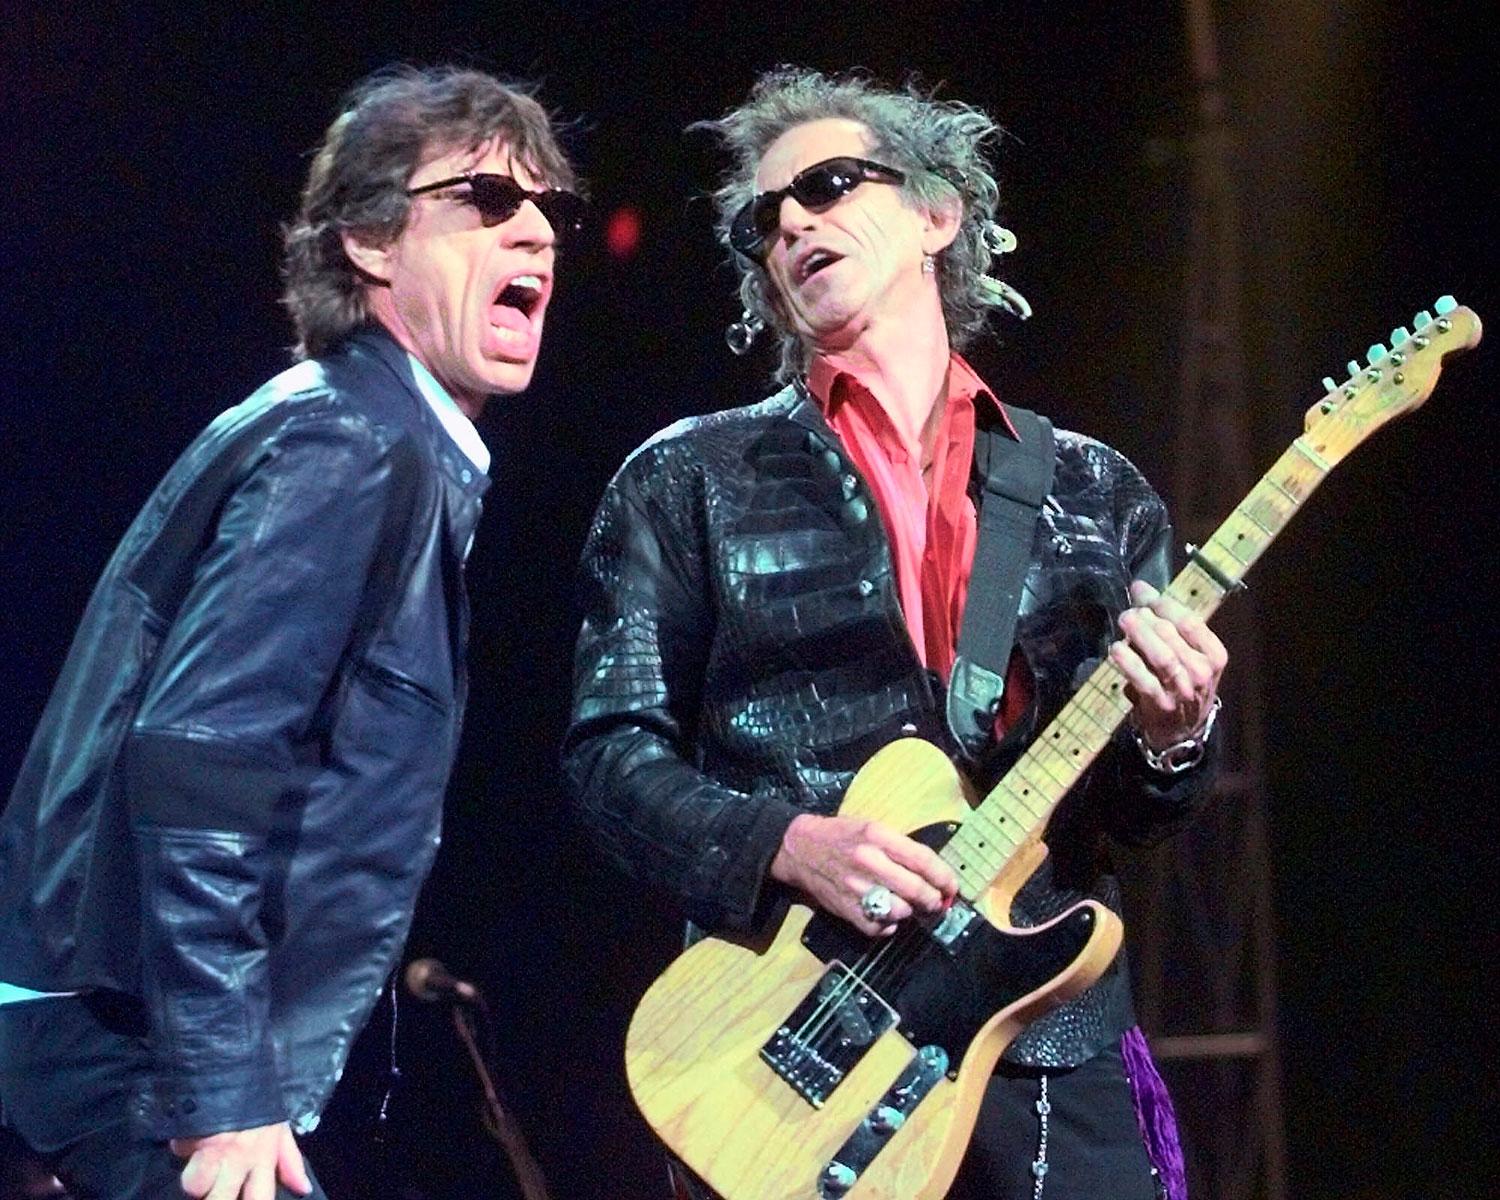 ”Den komplexa och sentimentala nostalgin gör, på gott och ont, en av världens mest skrupellösa branscher mer rörande och mänsklig”, skriver Markus Larsson när han förklarar varför namn som Rolling Stones, Springsteen, Dylan och McCartney fortfarande konsumeras.